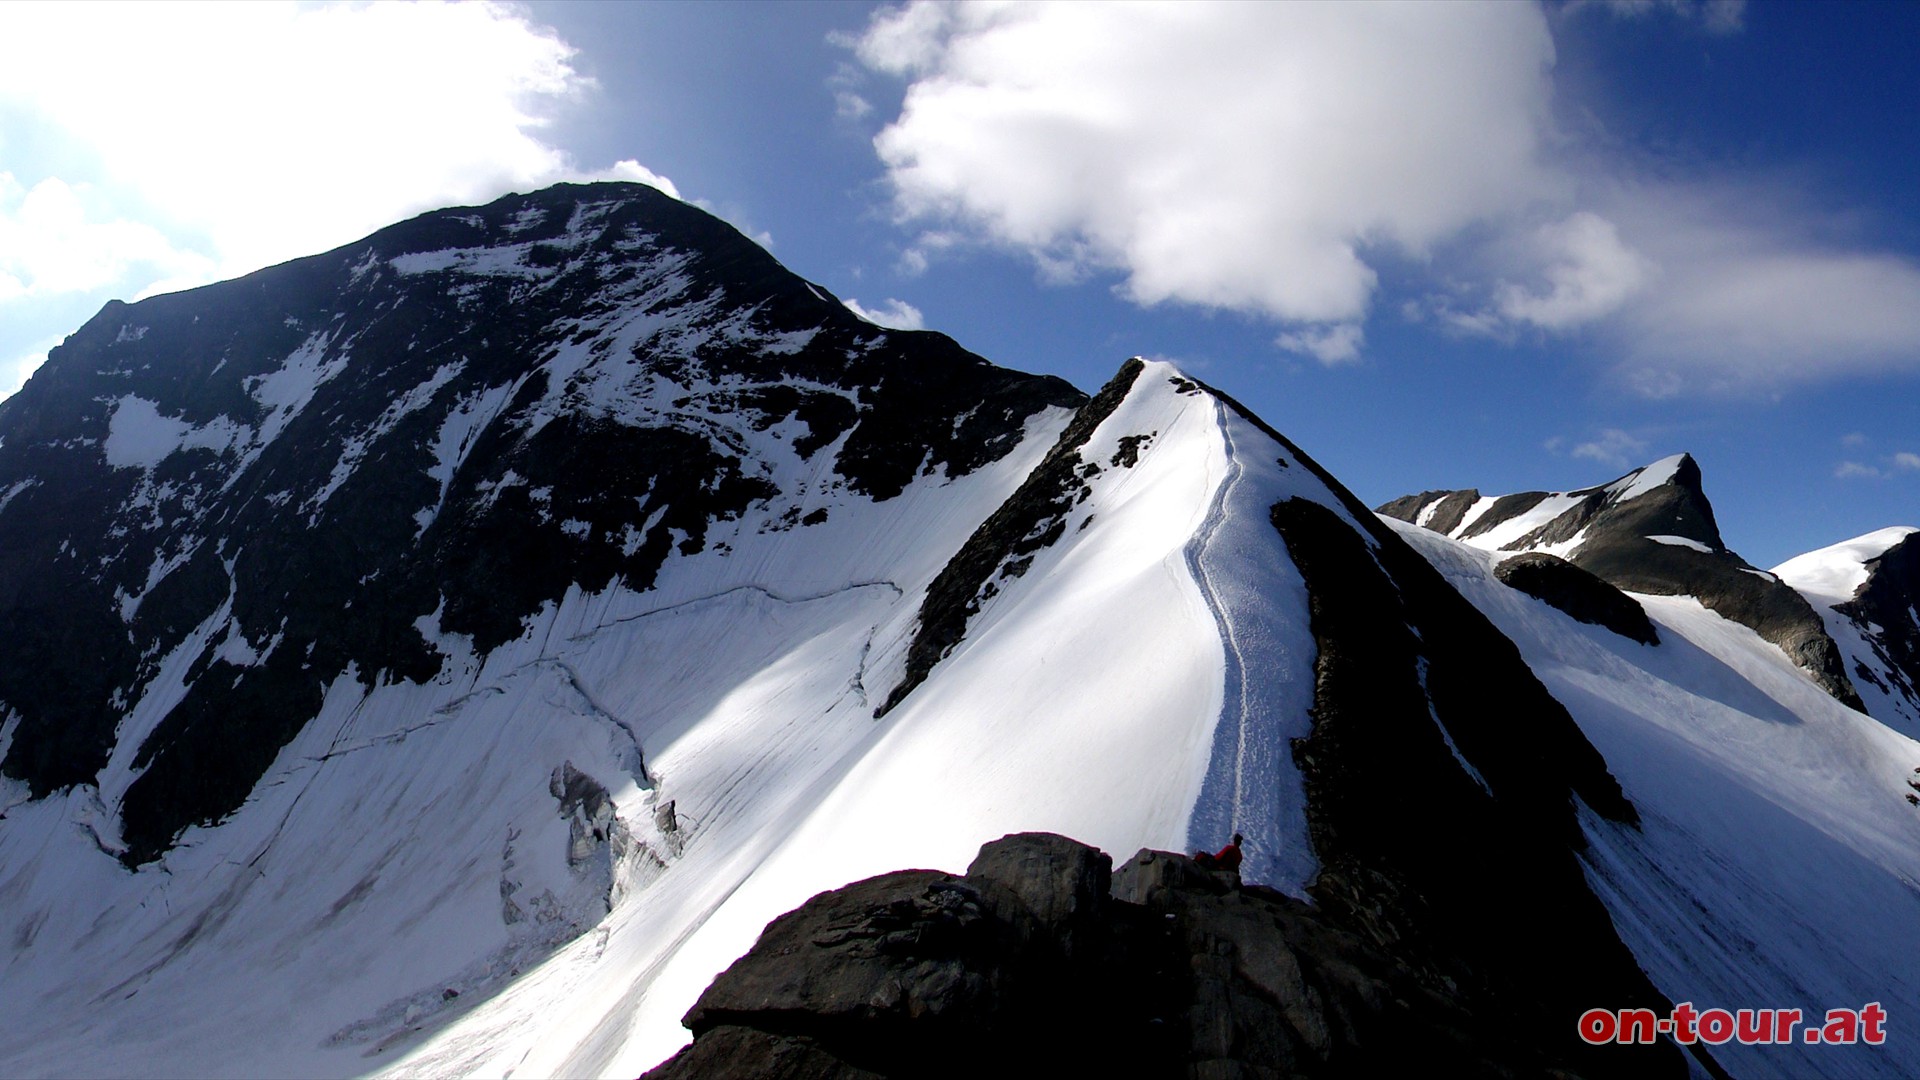 Am Kaindlgrat wird es schon ausgesetzter. Links bereits der mchtige Gipfelaufbau vom Wiesbachhorn.